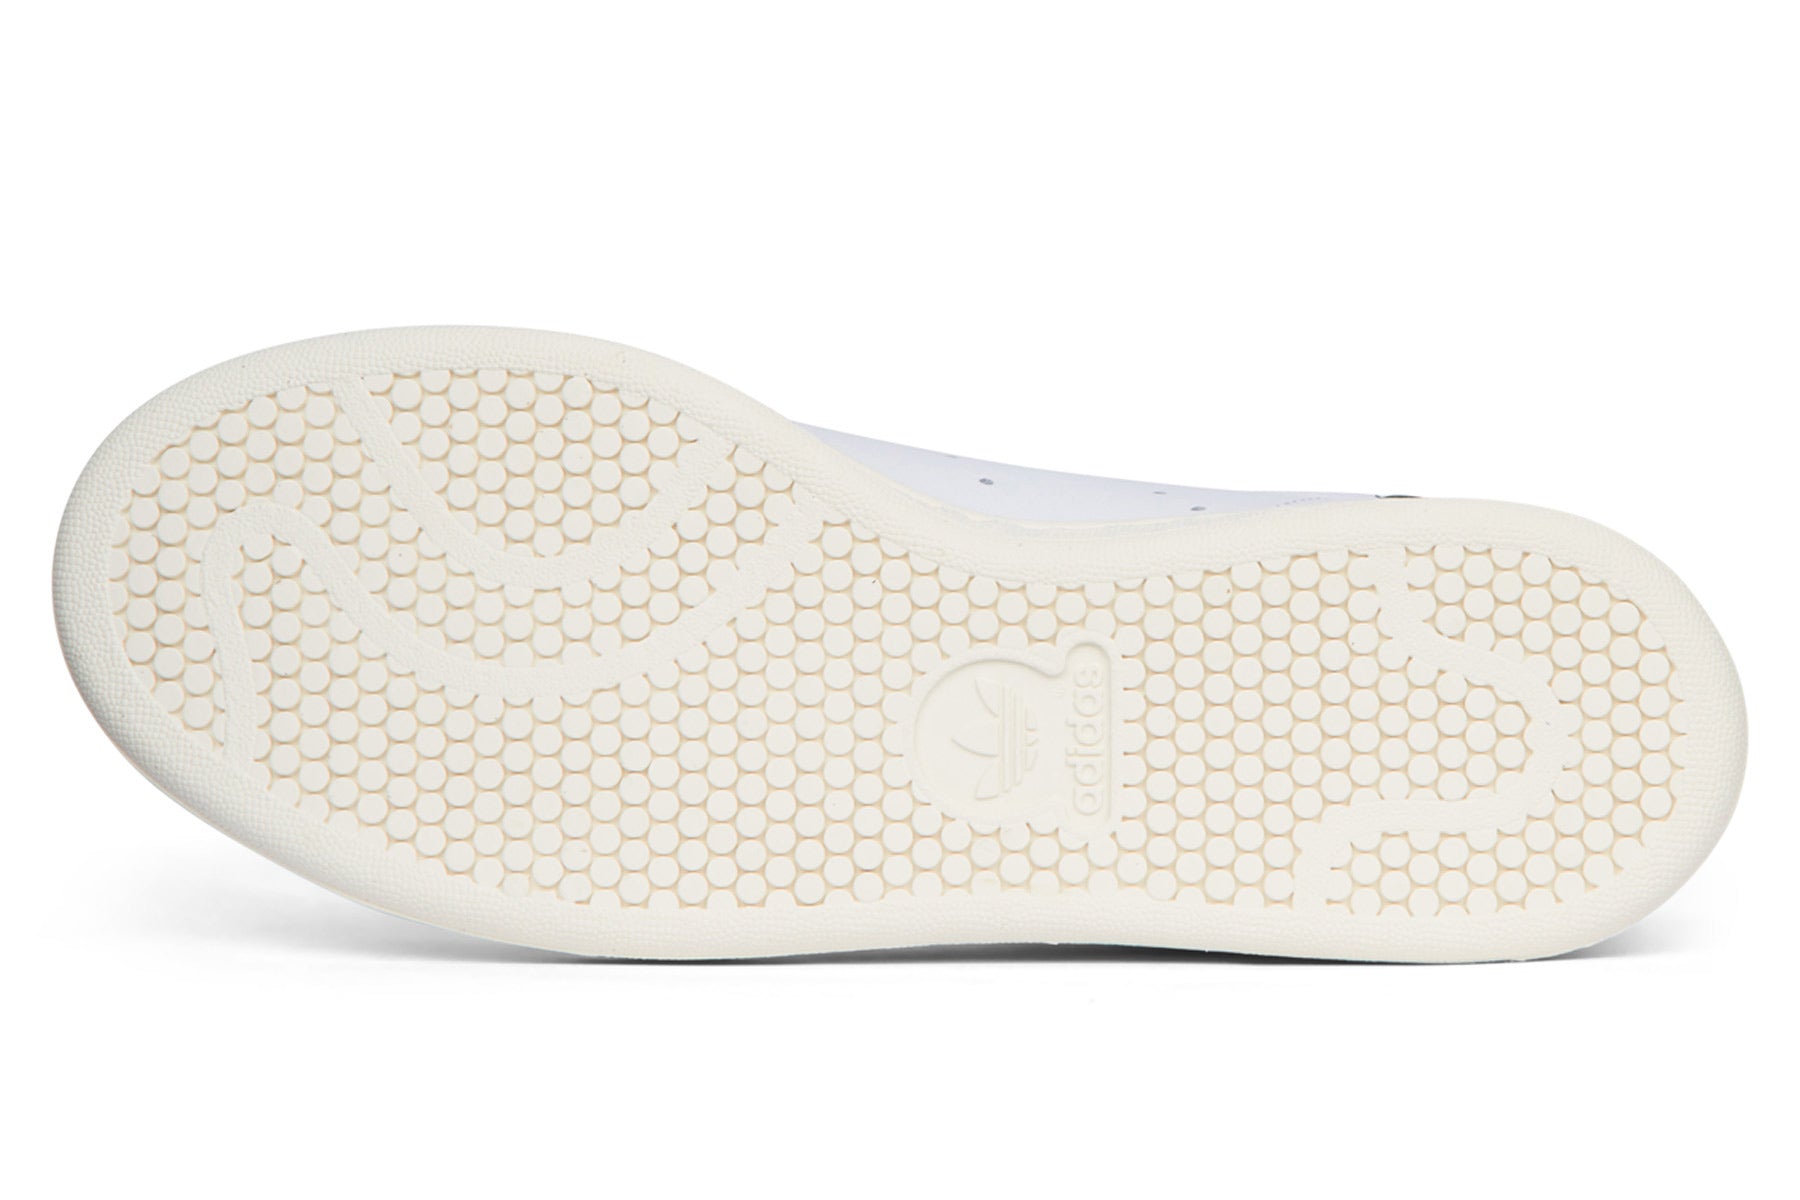 Adidas Stan Smith Lux - Off White/Cream White/Pantone